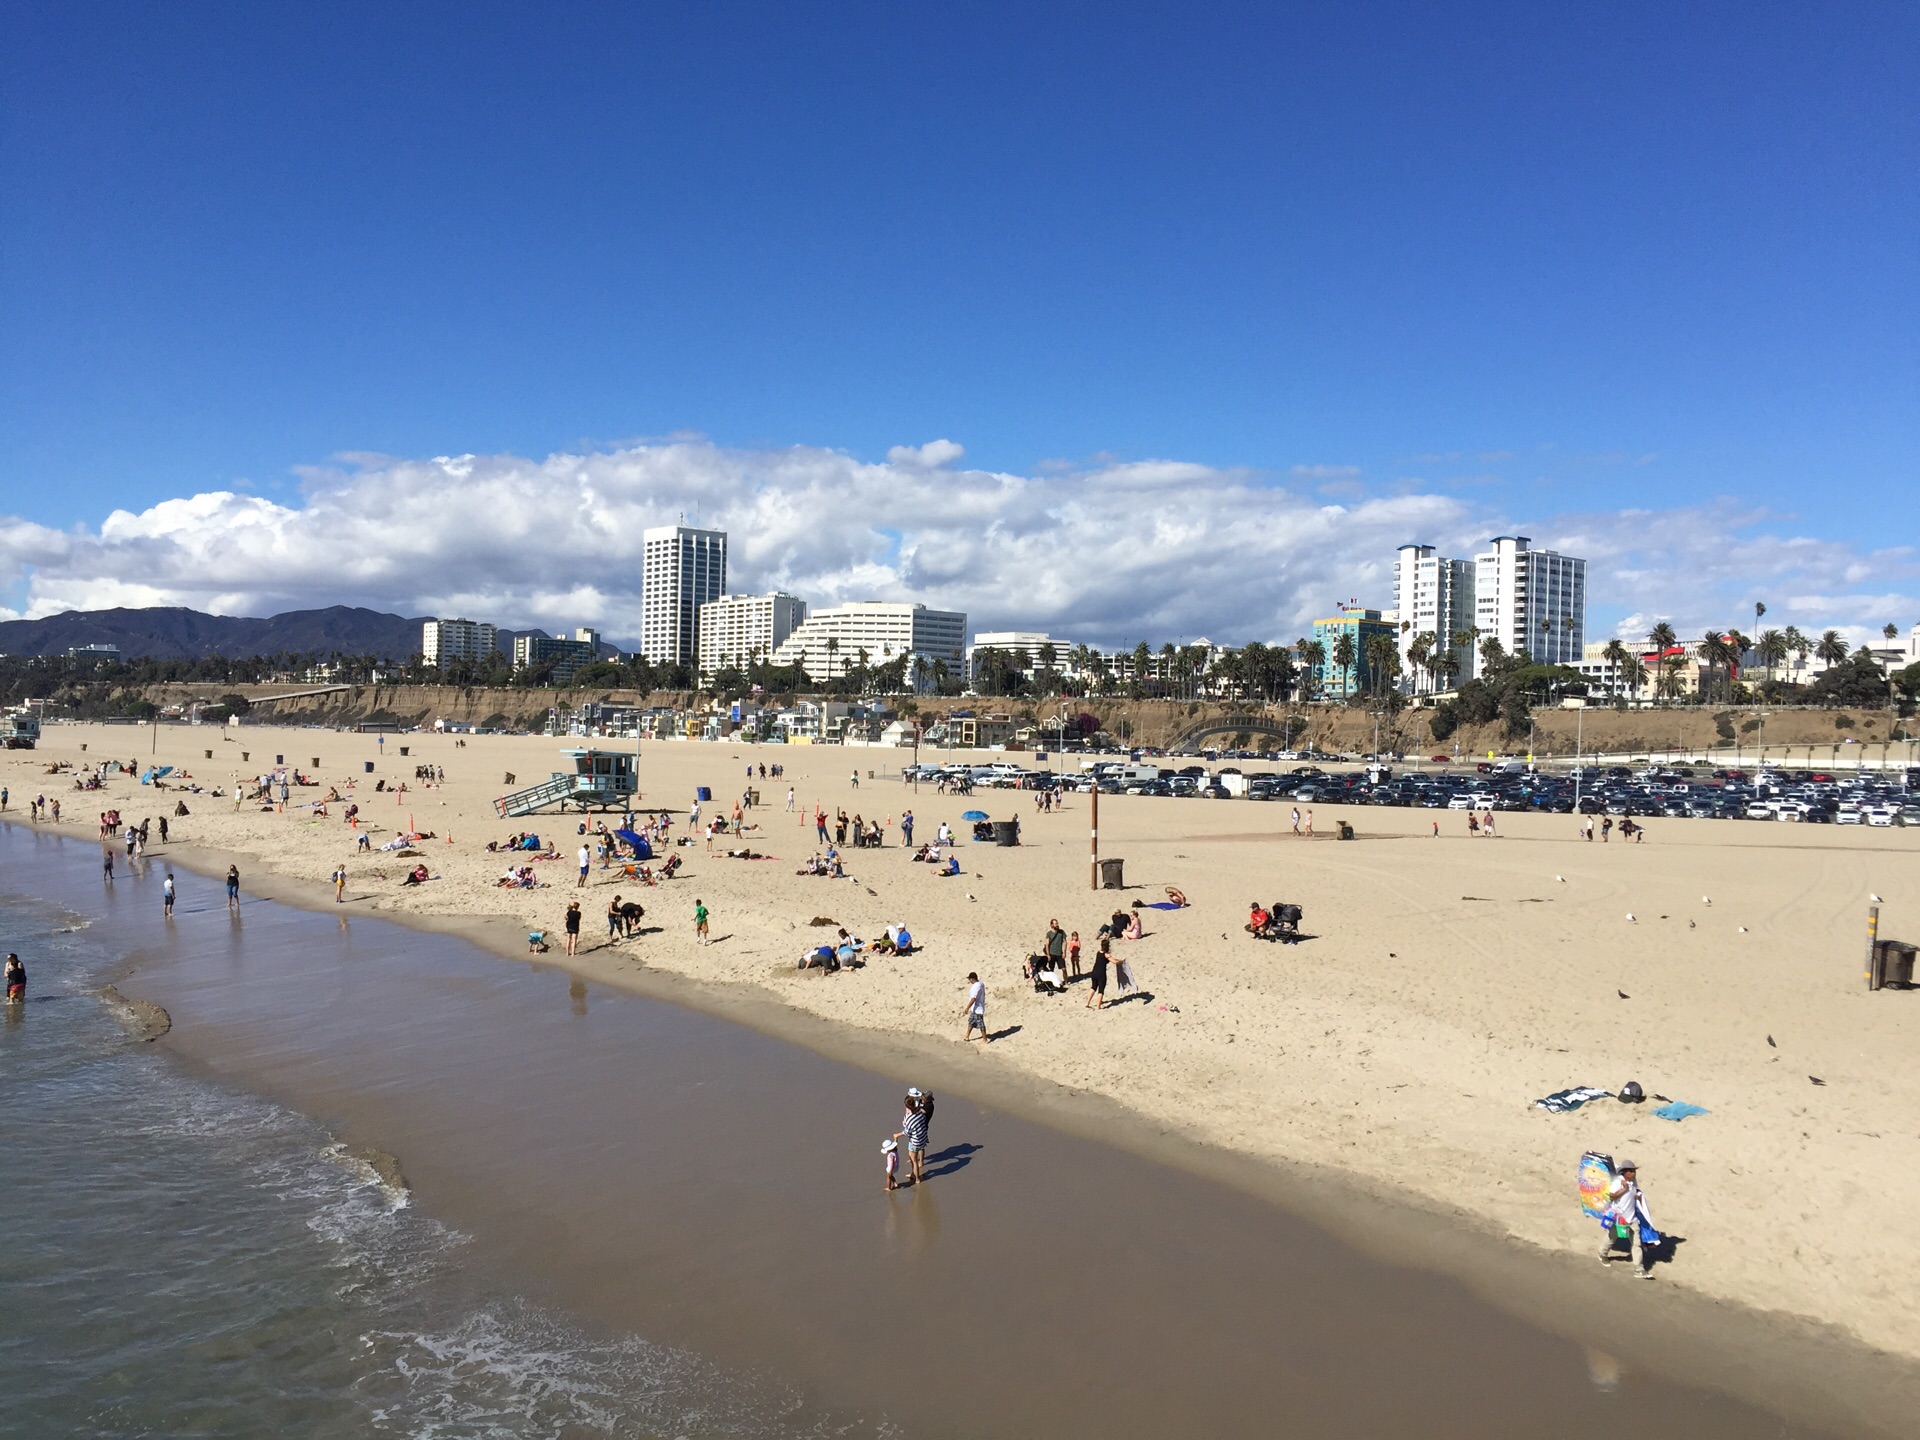 【携程攻略】洛杉矶圣莫尼卡海滩景点,santa monica beach 是一个非常